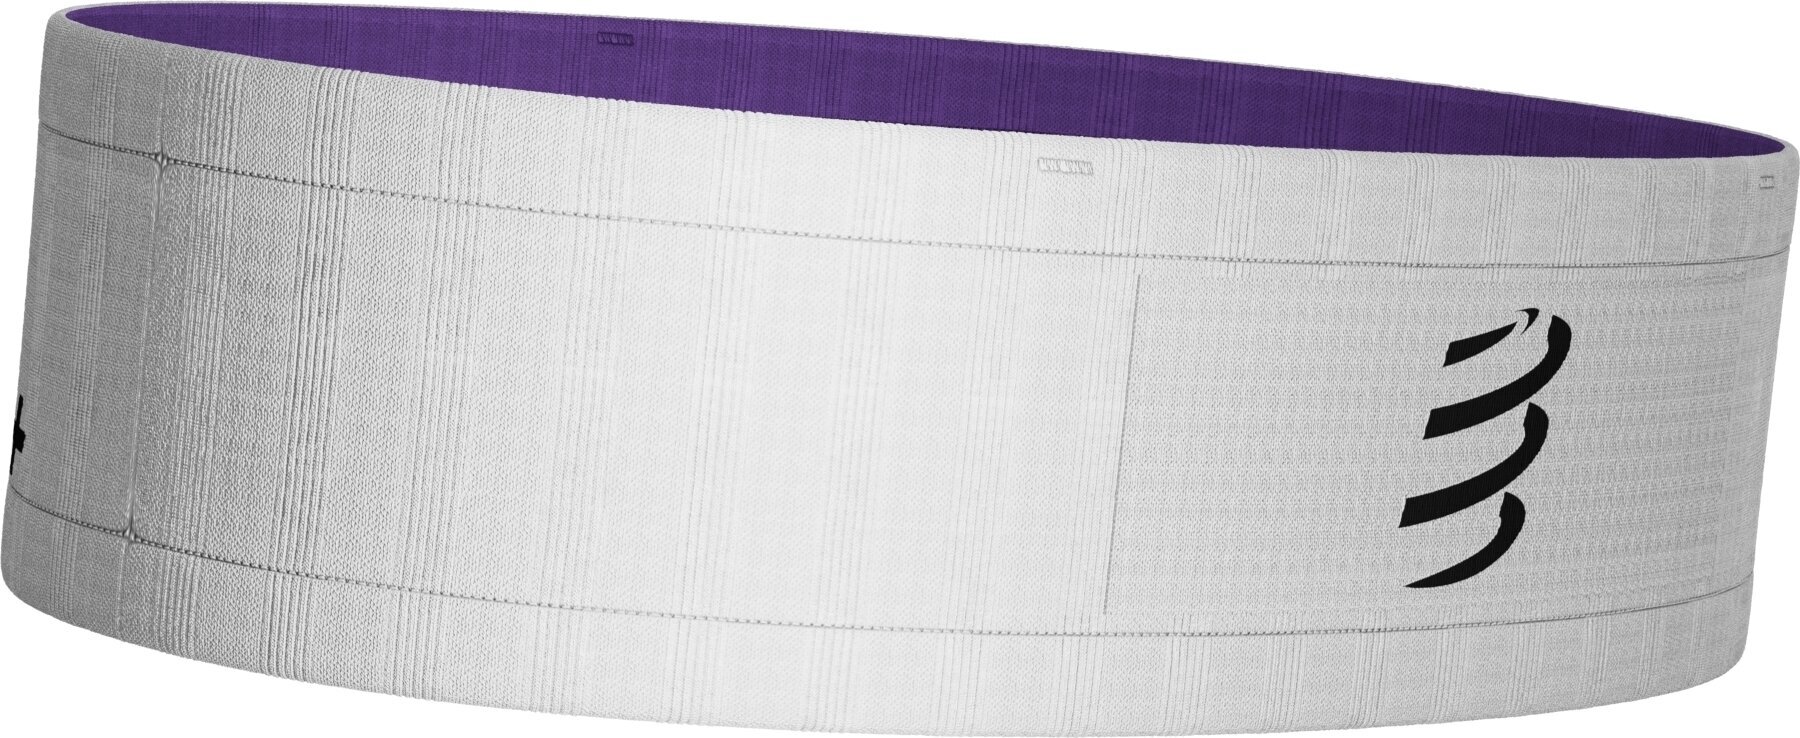 Compressport Free Belt White/Royal Lilac XS/S Bežecké puzdro